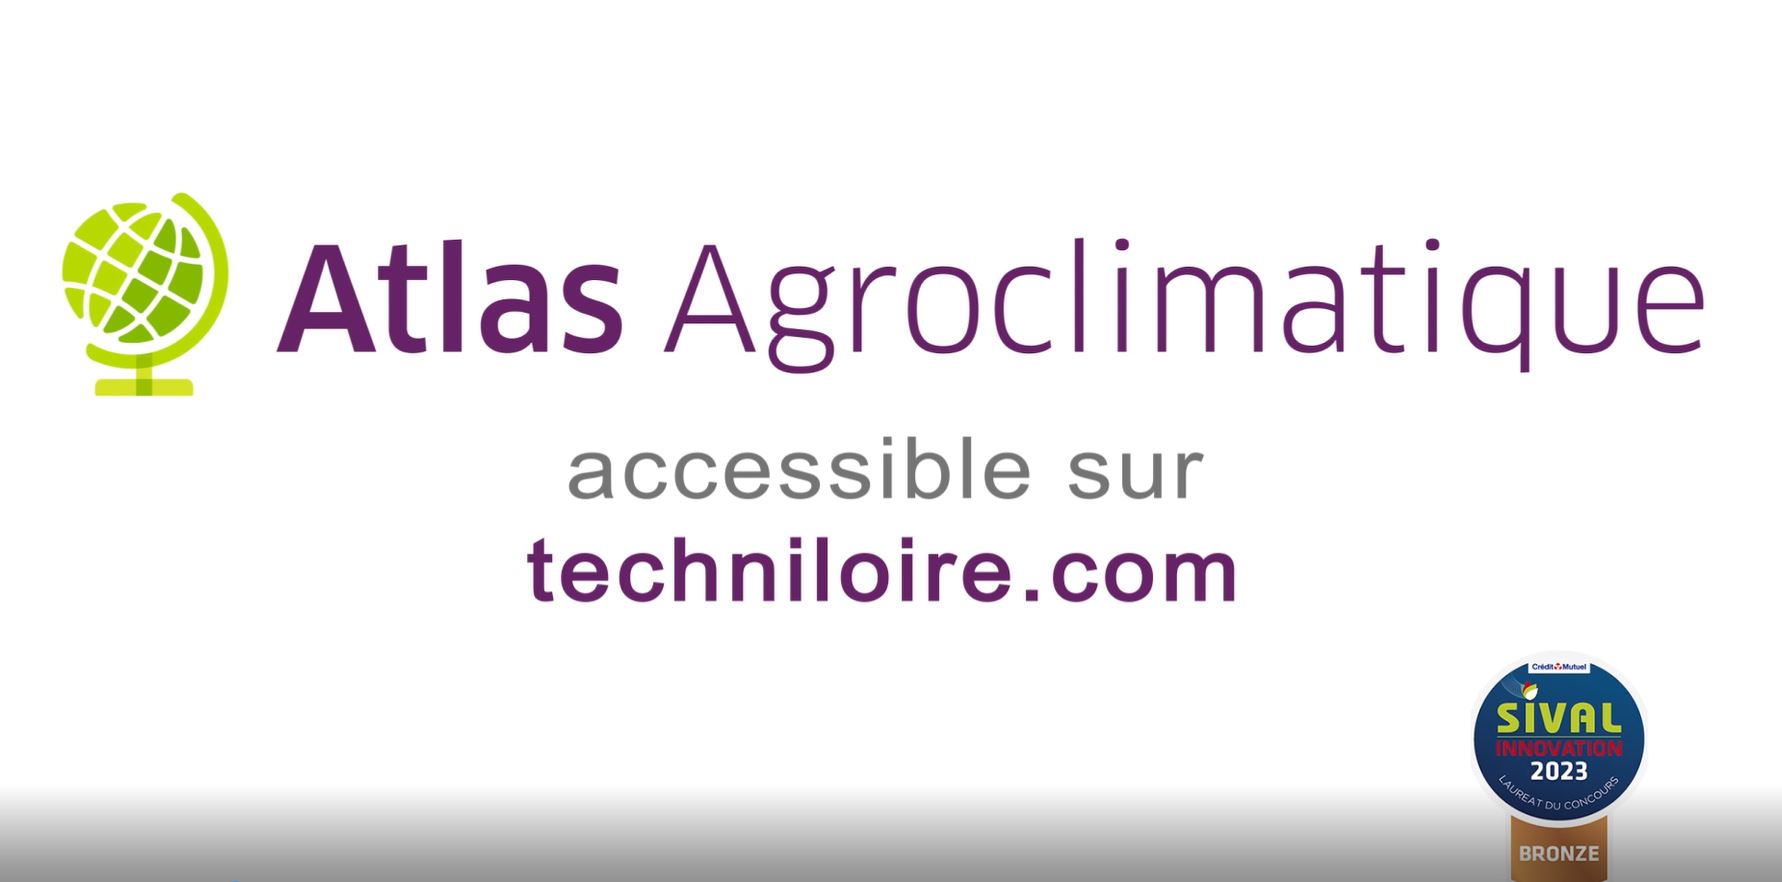 L'Atlas Agroclimatique en 1 min